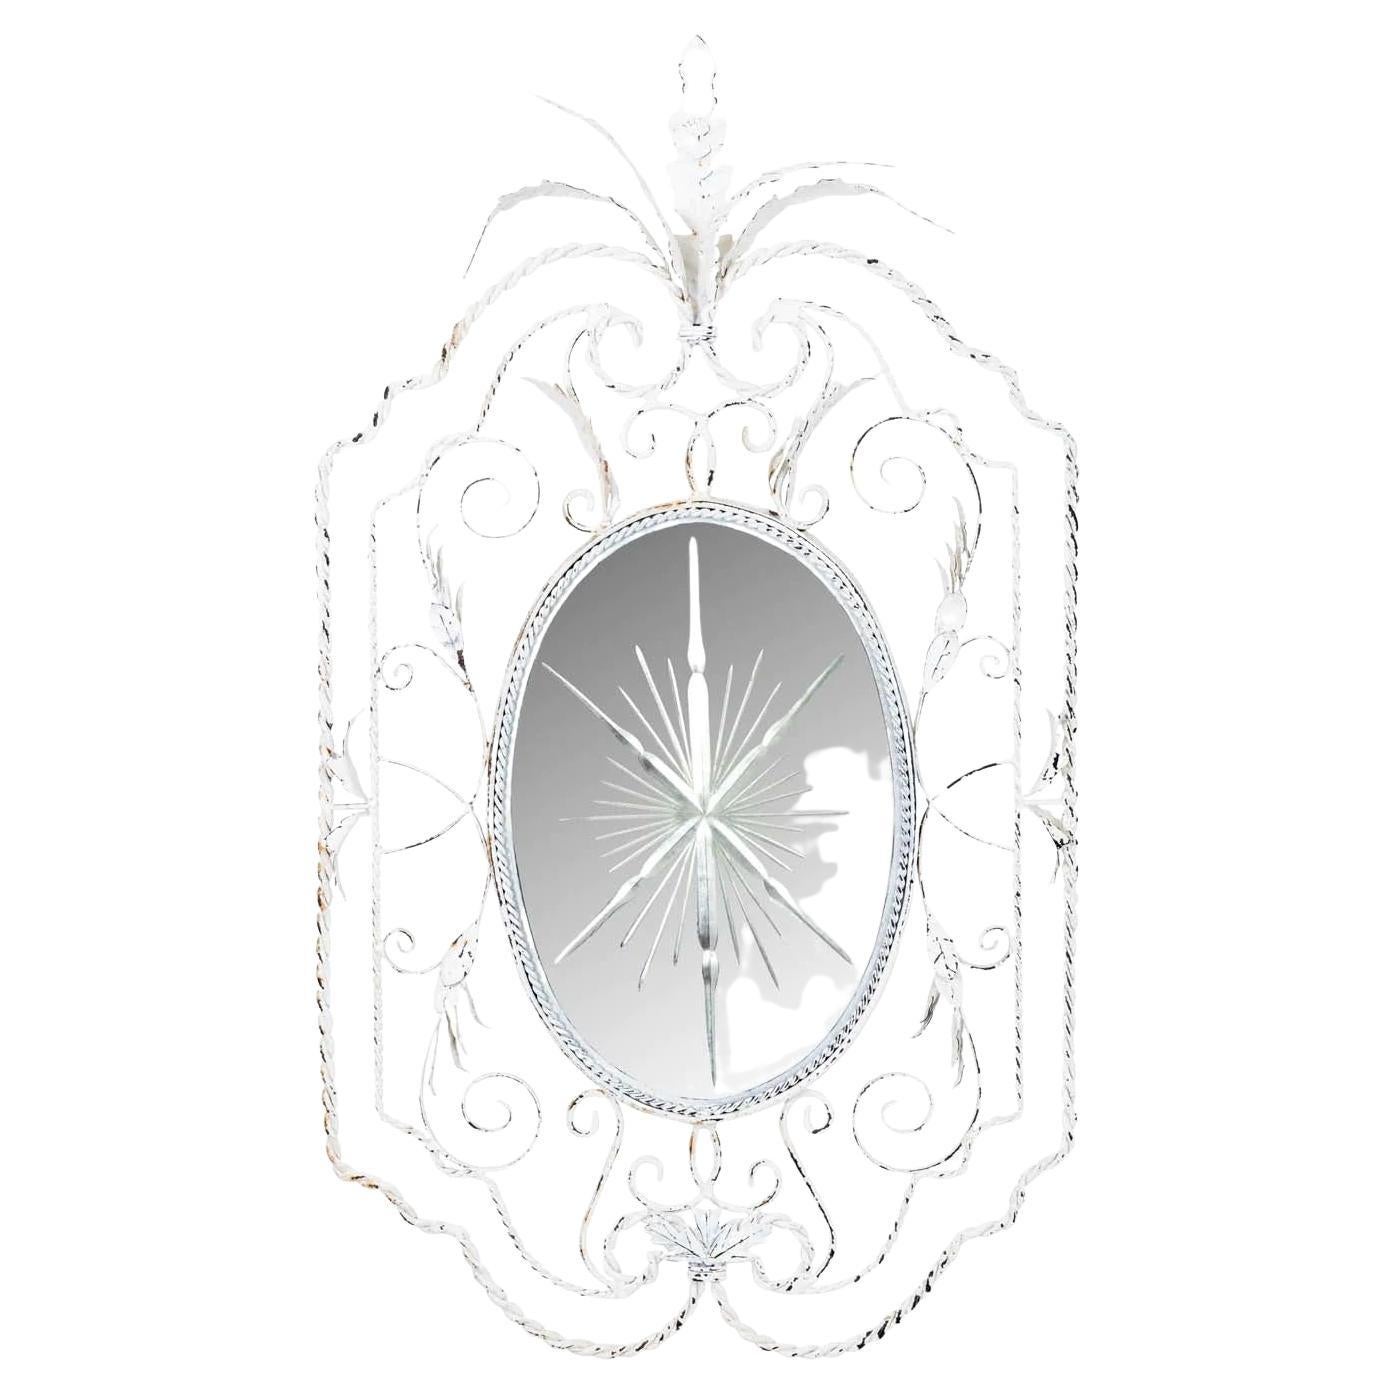 Miroir encadré en fer torsadé peint avec une étoile en relief dans le miroir. Finition originale shabby chic peinte en blanc dégradé. Bon état général.